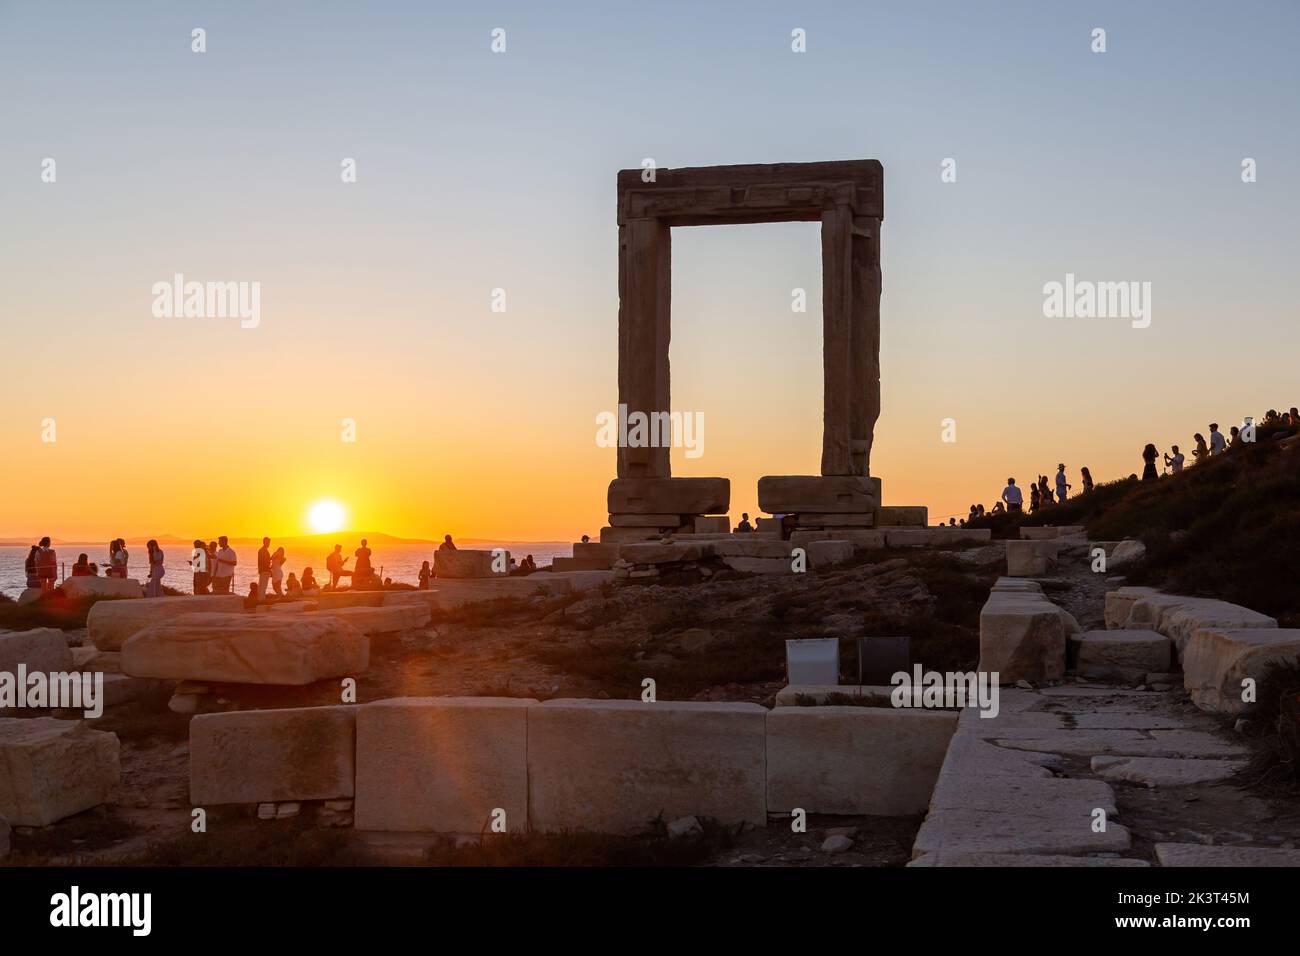 Île de Naxos, coucher de soleil sur Temple d'Apollon, Cyclades Grèce. Les gens apprécient le coucher de soleil de l'îlot de Palatia. Banque D'Images